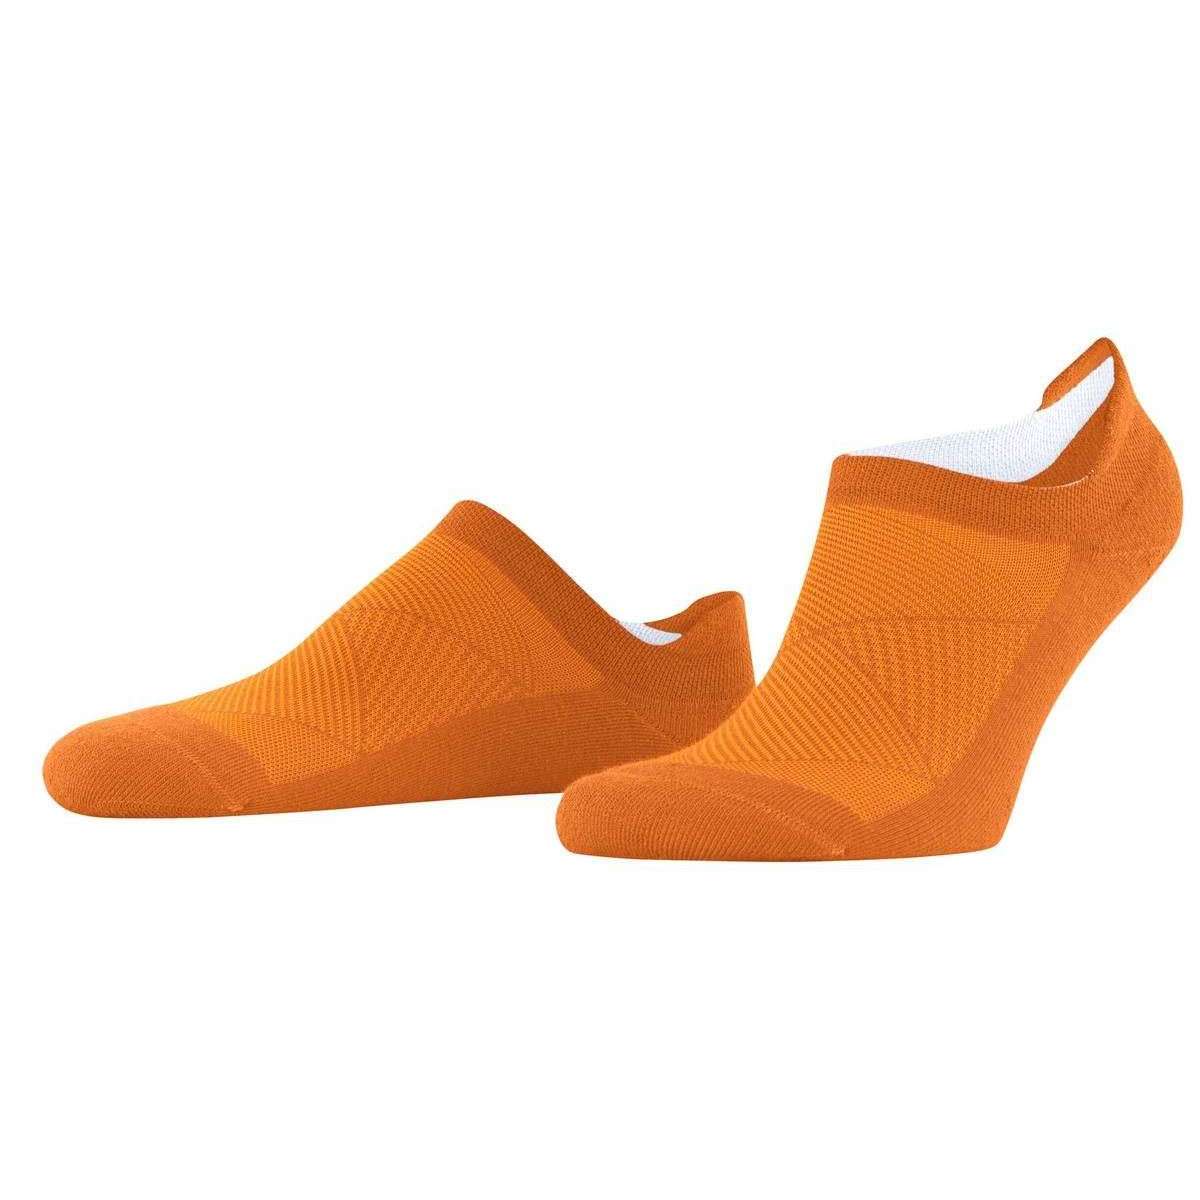 Burlington Athleisure Socks - Autumn Leaf Orange